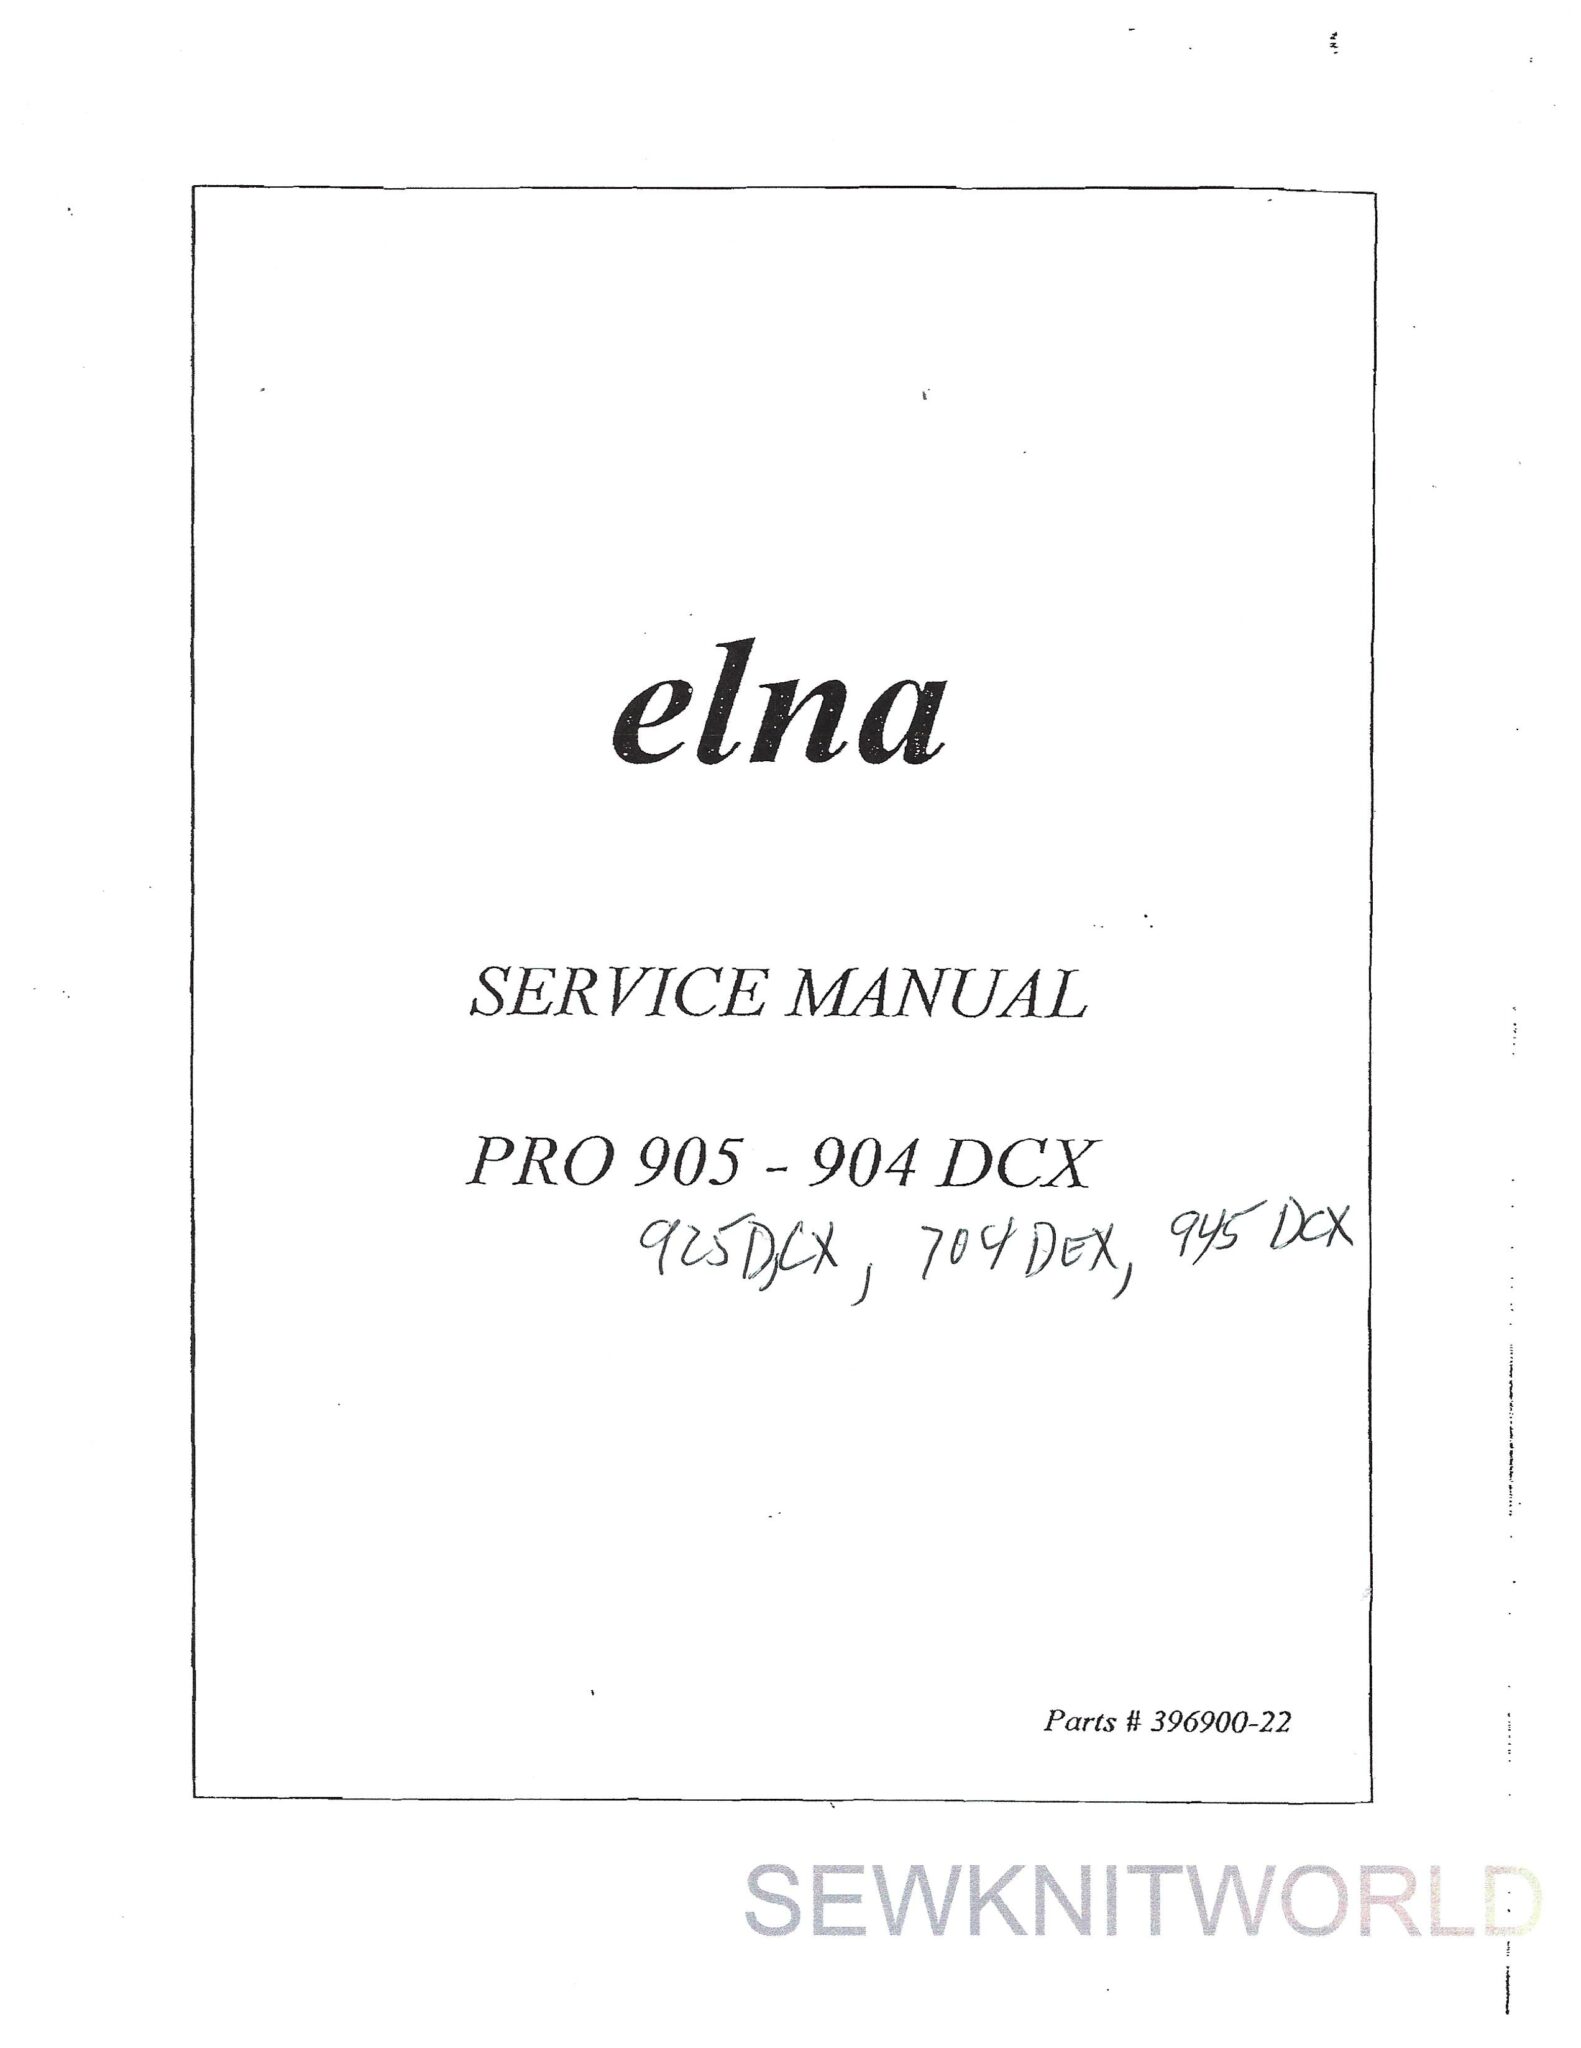 Elna Pro 905 Dcx Service Manual